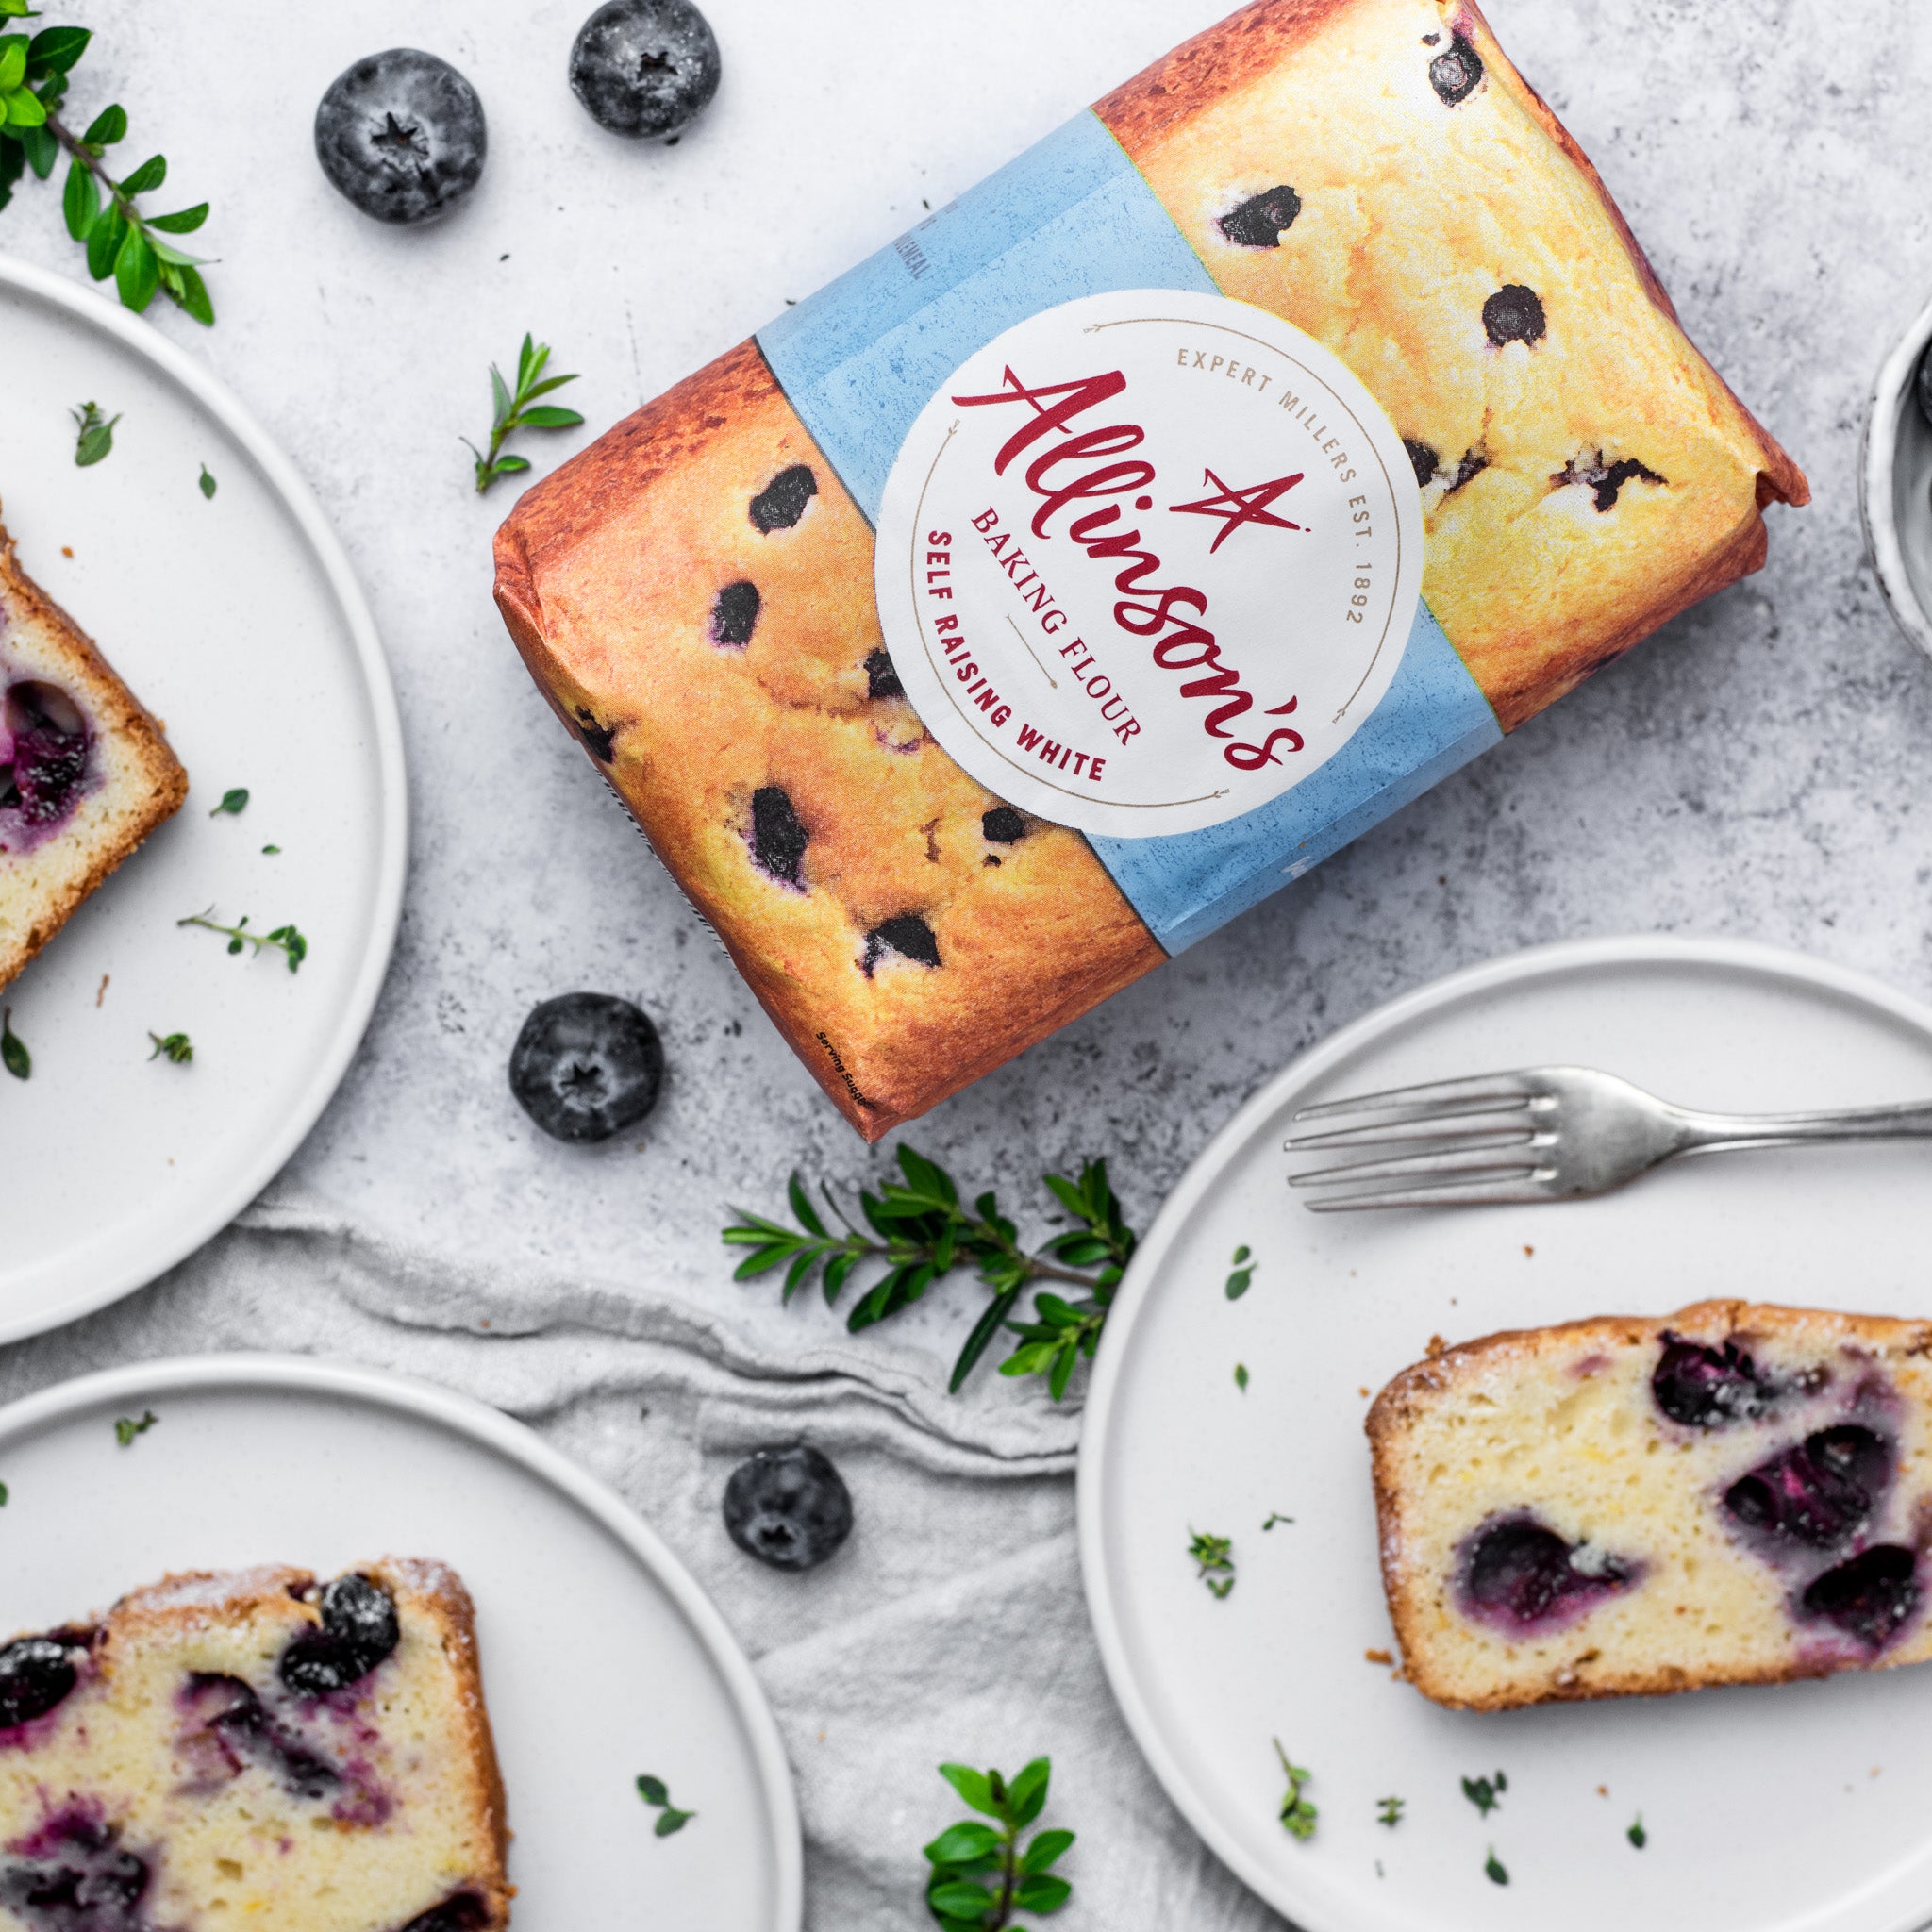 Allinsons-Blueberry-Lemon-Loaf-Cake-1-1-Baking-Mad-2.jpg